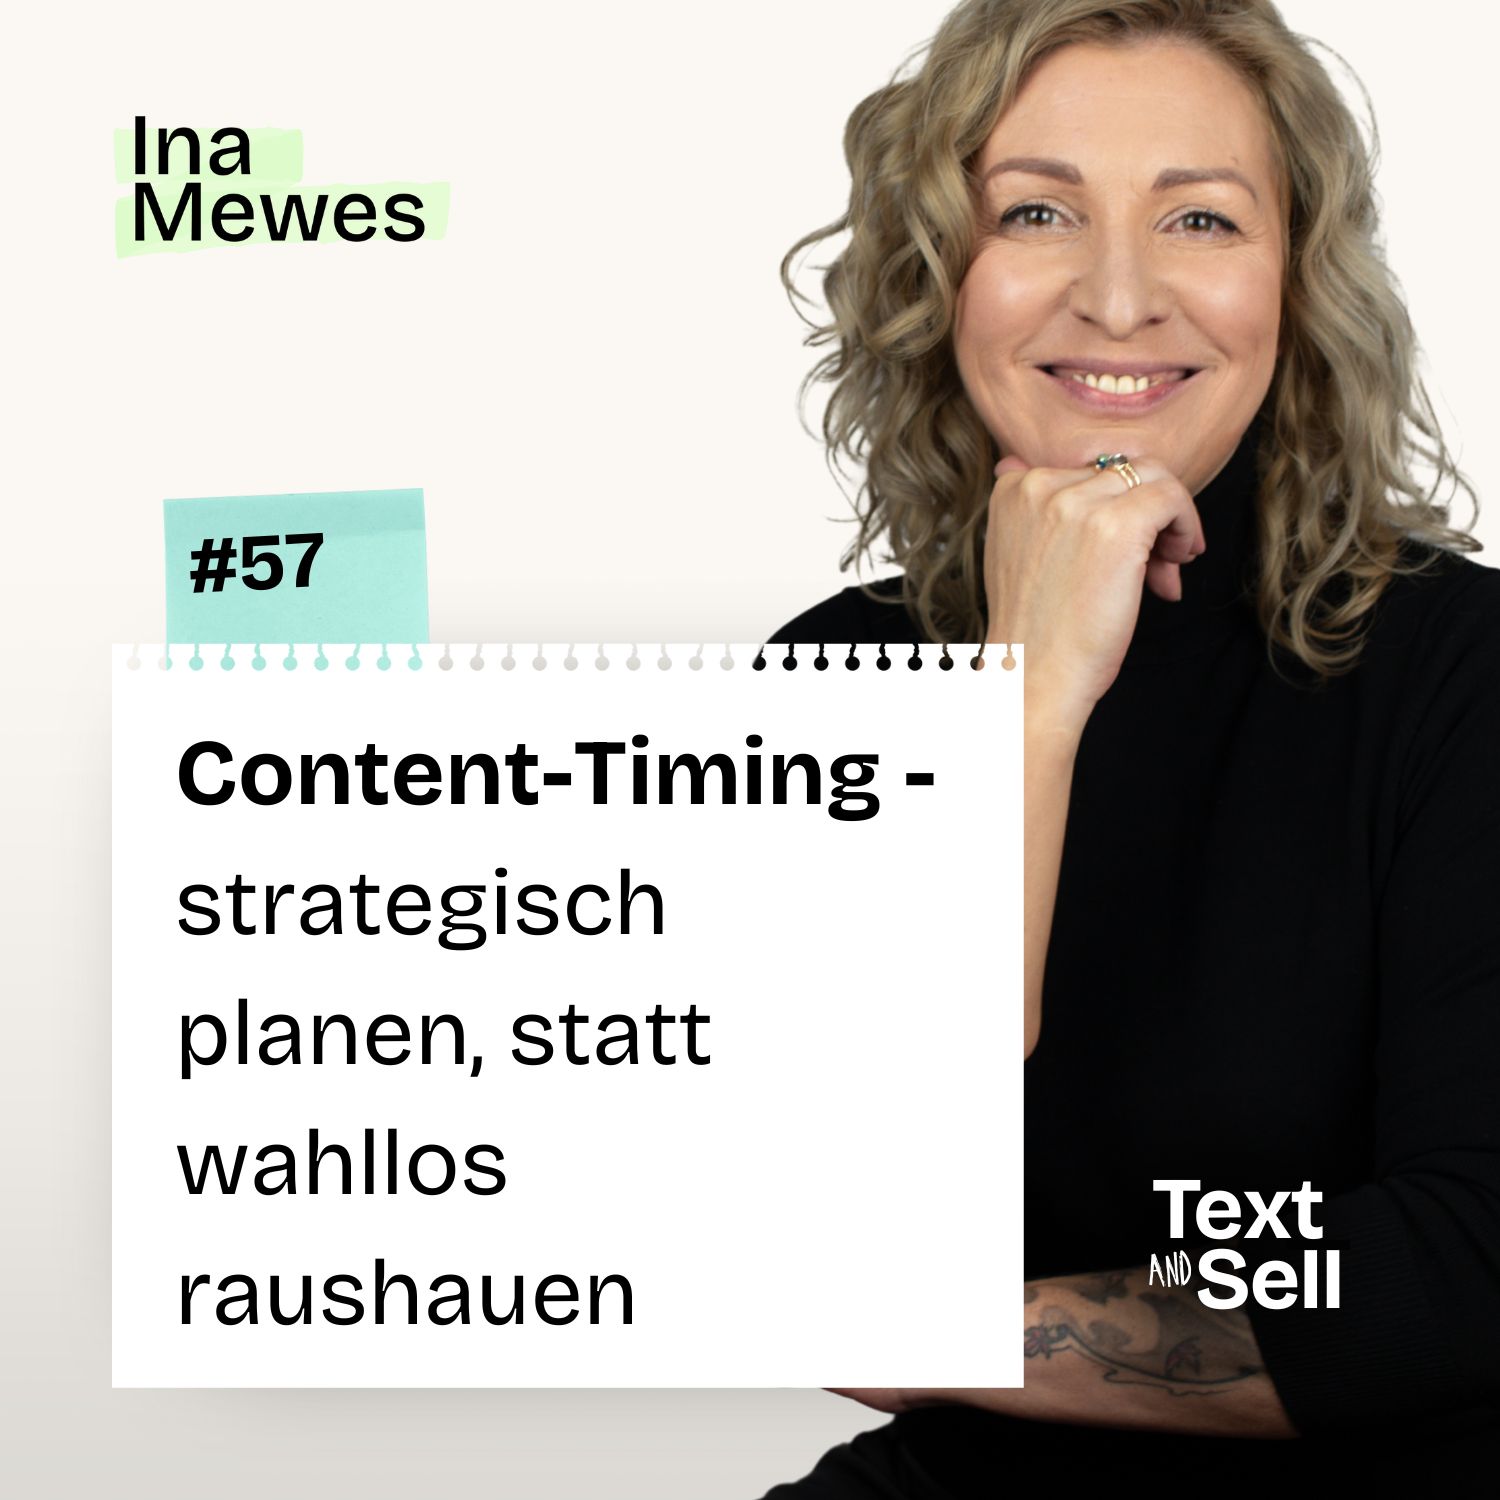 Content-Timing - Strategisch veröffentlichen, statt wahllos raushauen